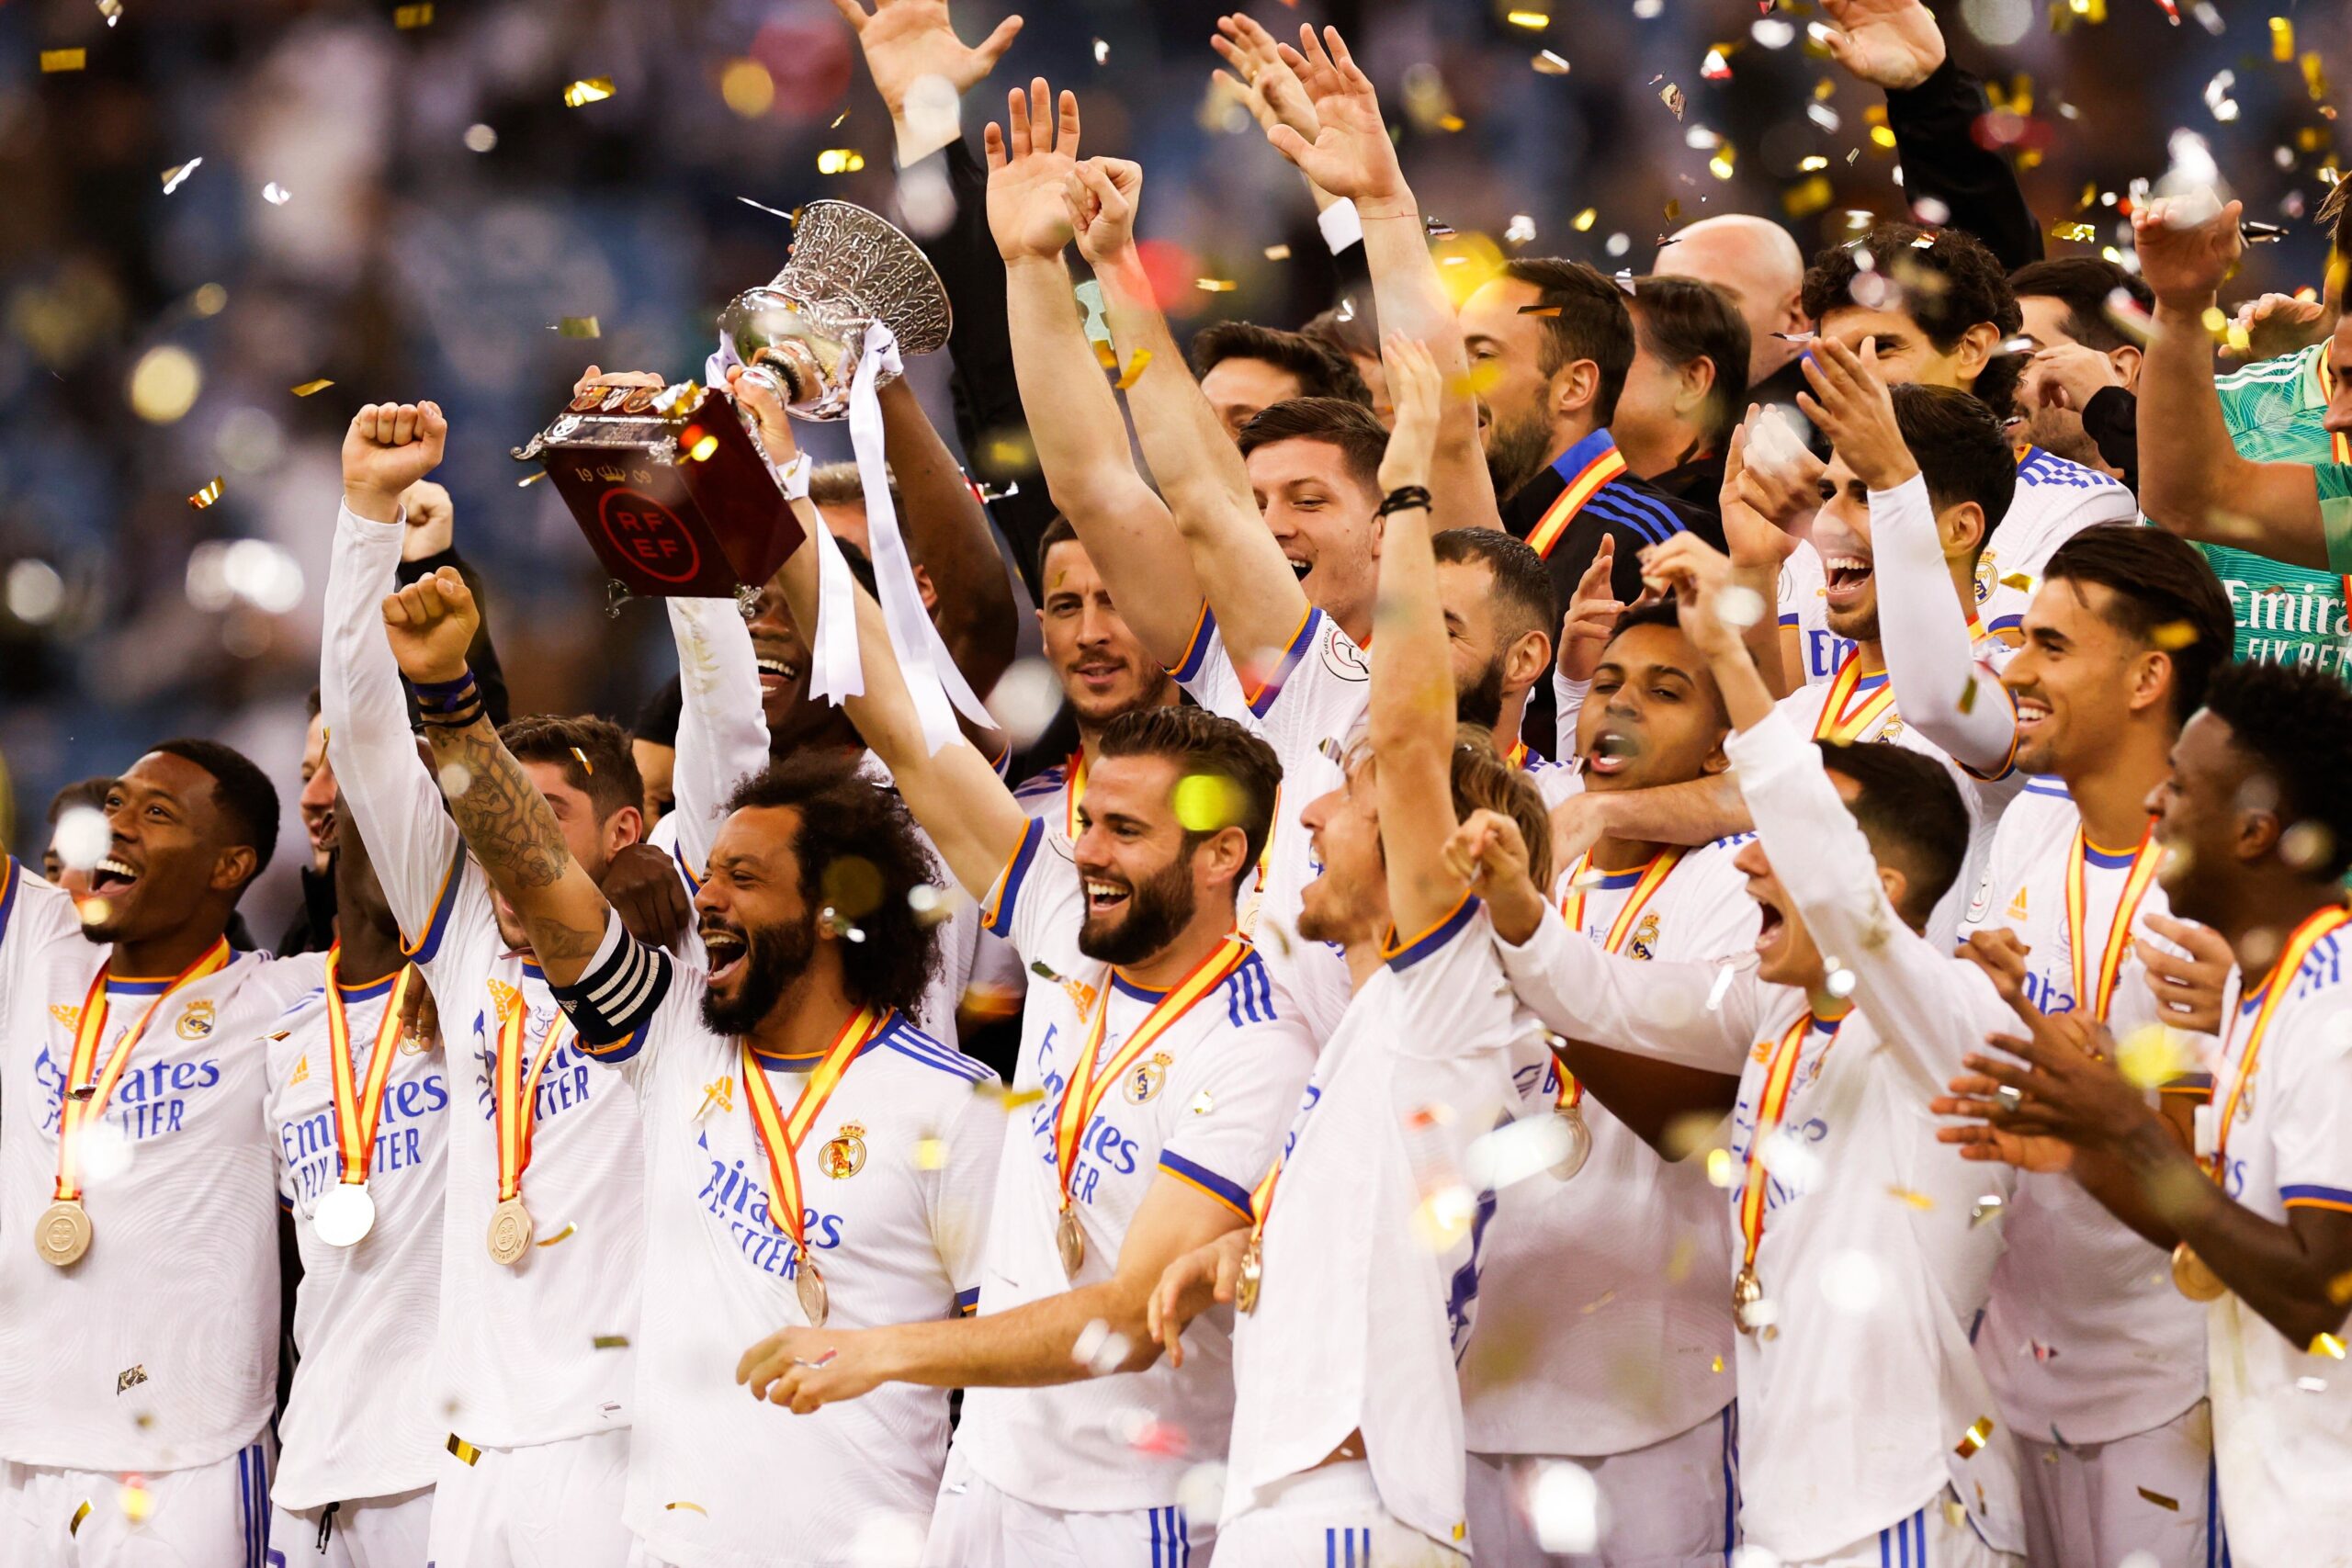 Real Madrid coronado, nuevo título para Benzema – Foot11.com